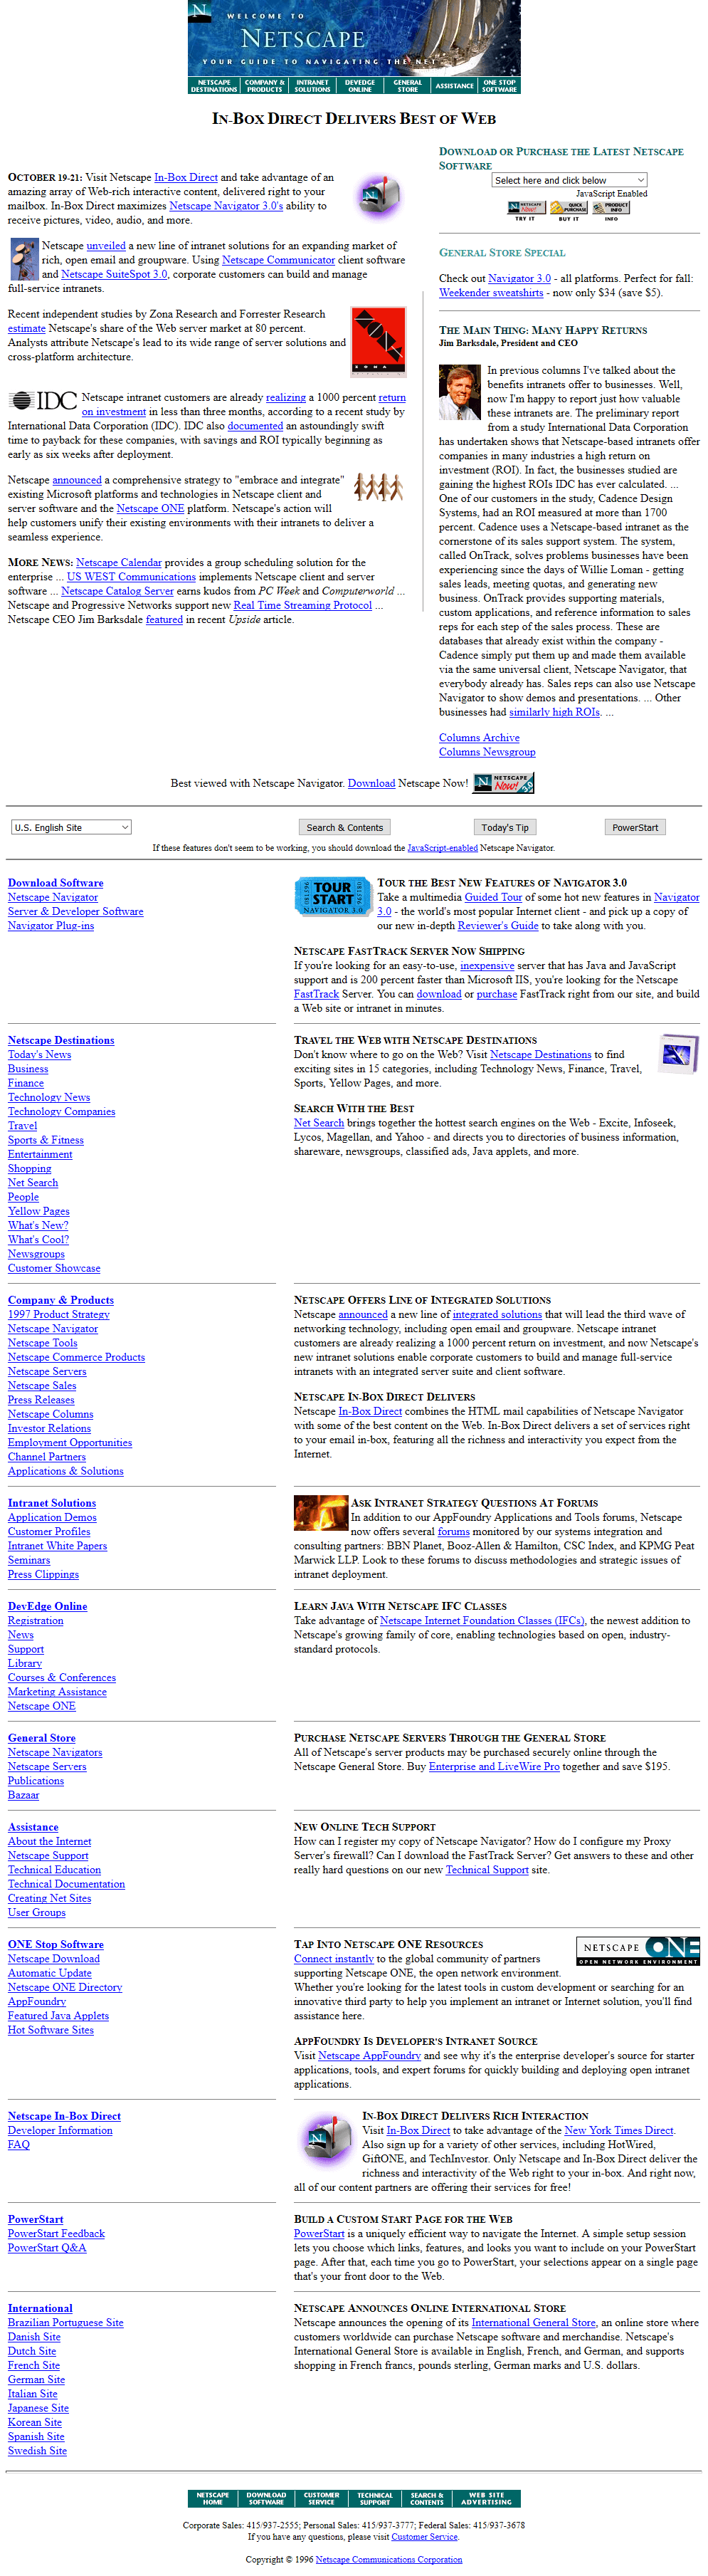 Netscape website in 1996